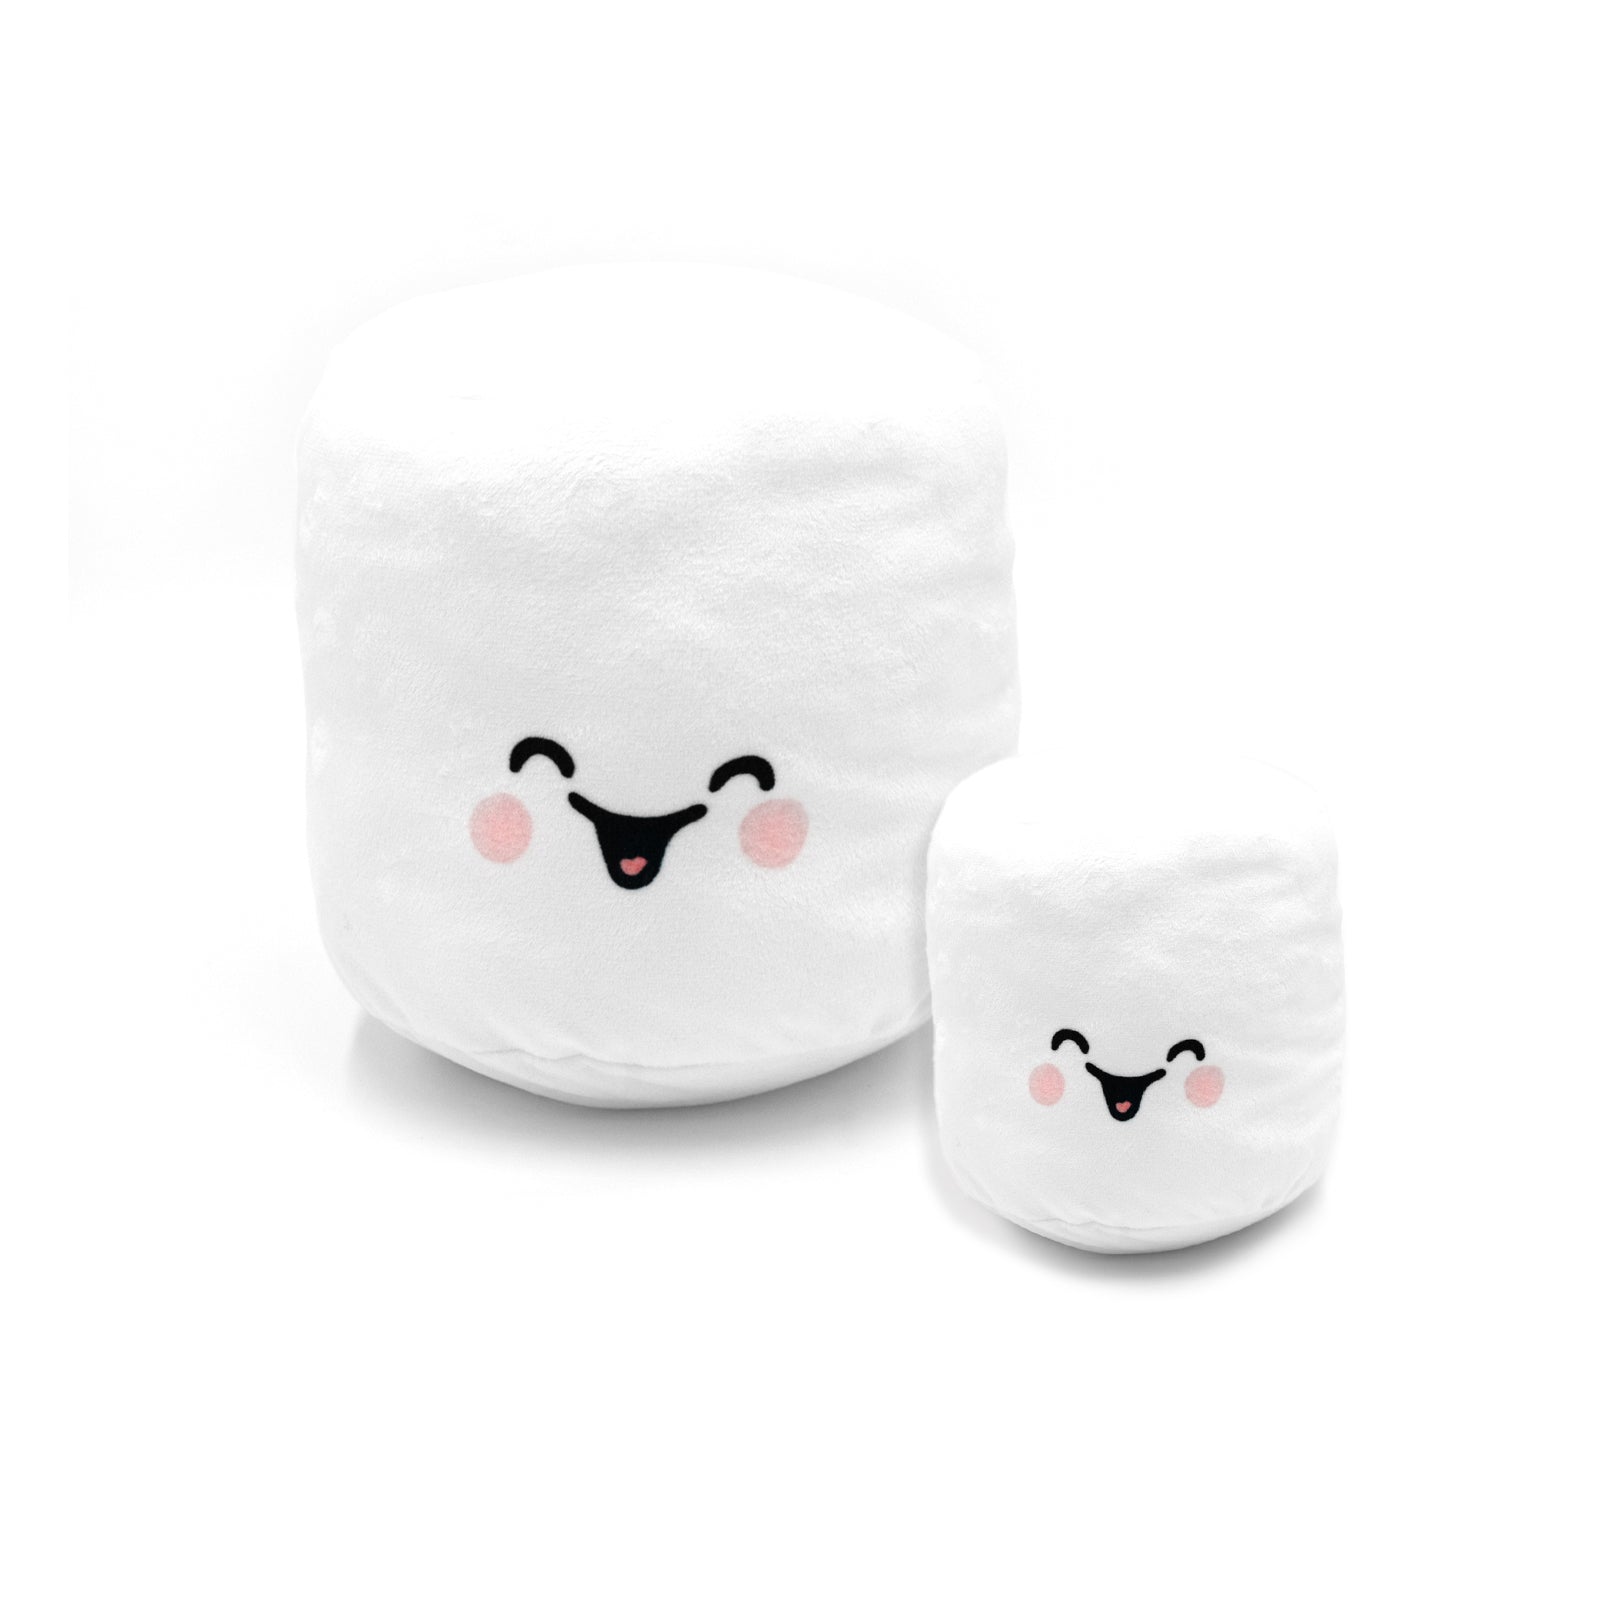 Marshmallow Squishy Plush